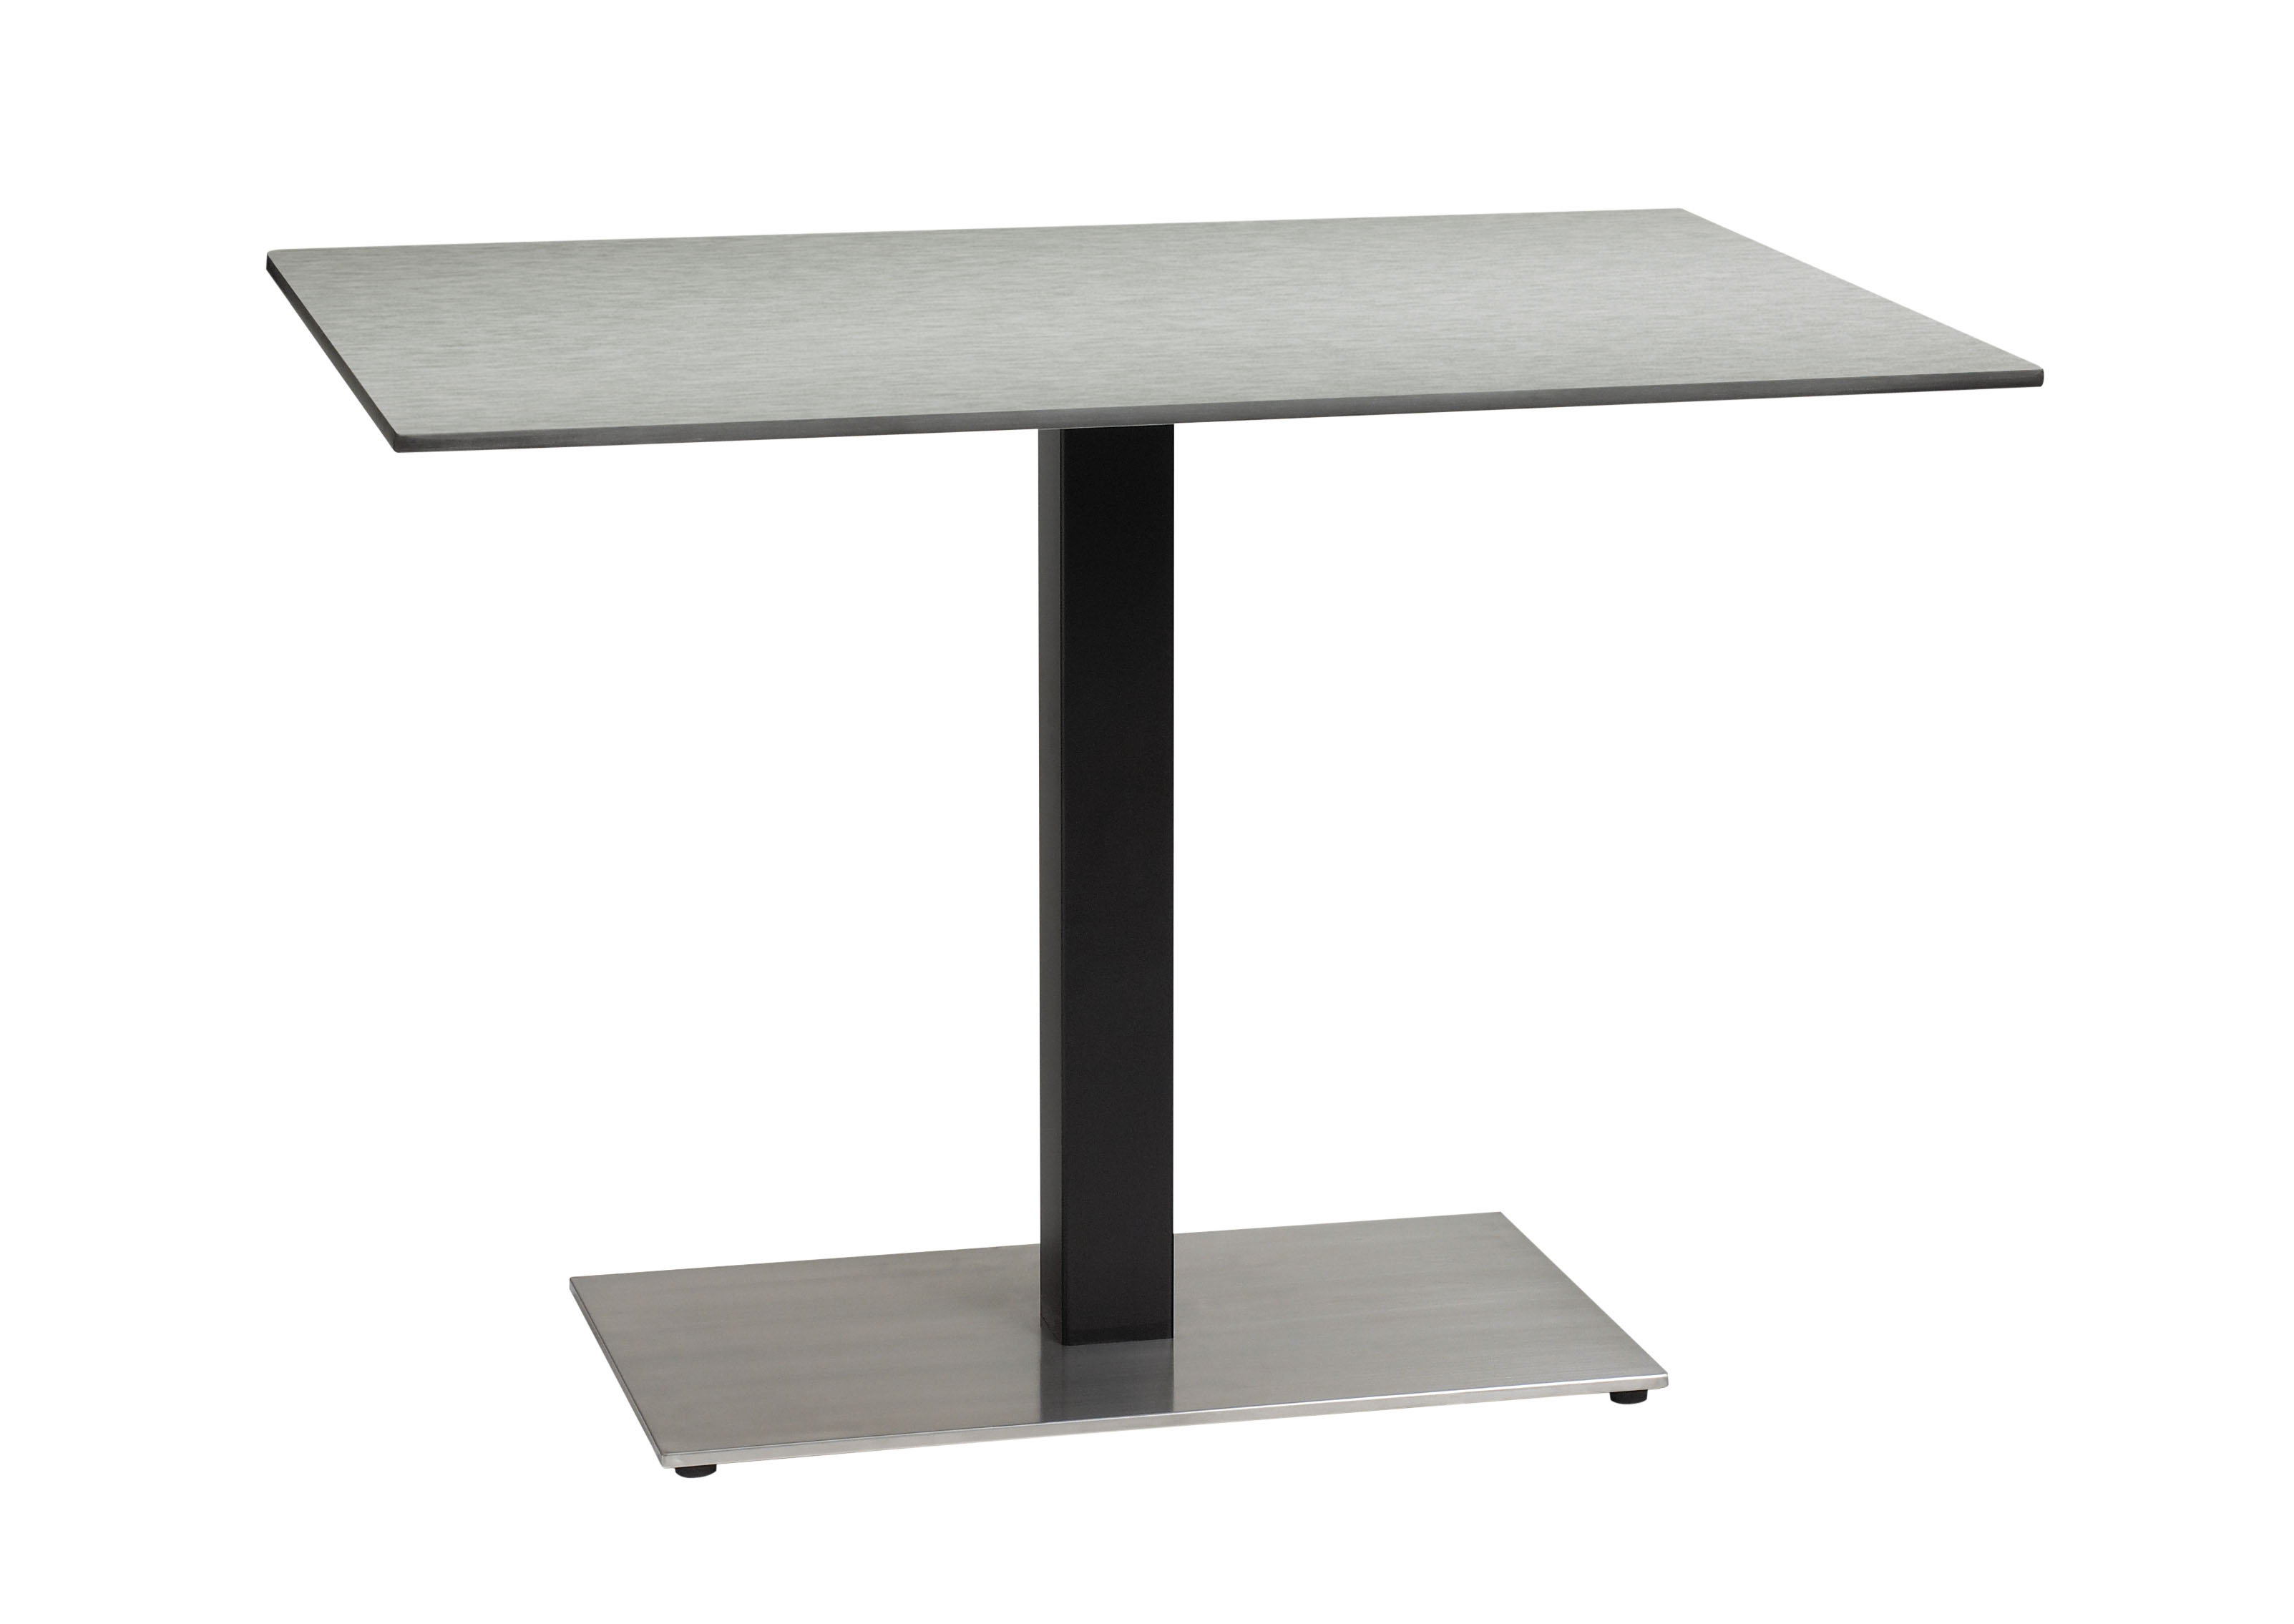  HPL  outdoor or indoor waterproof coffee table  top  